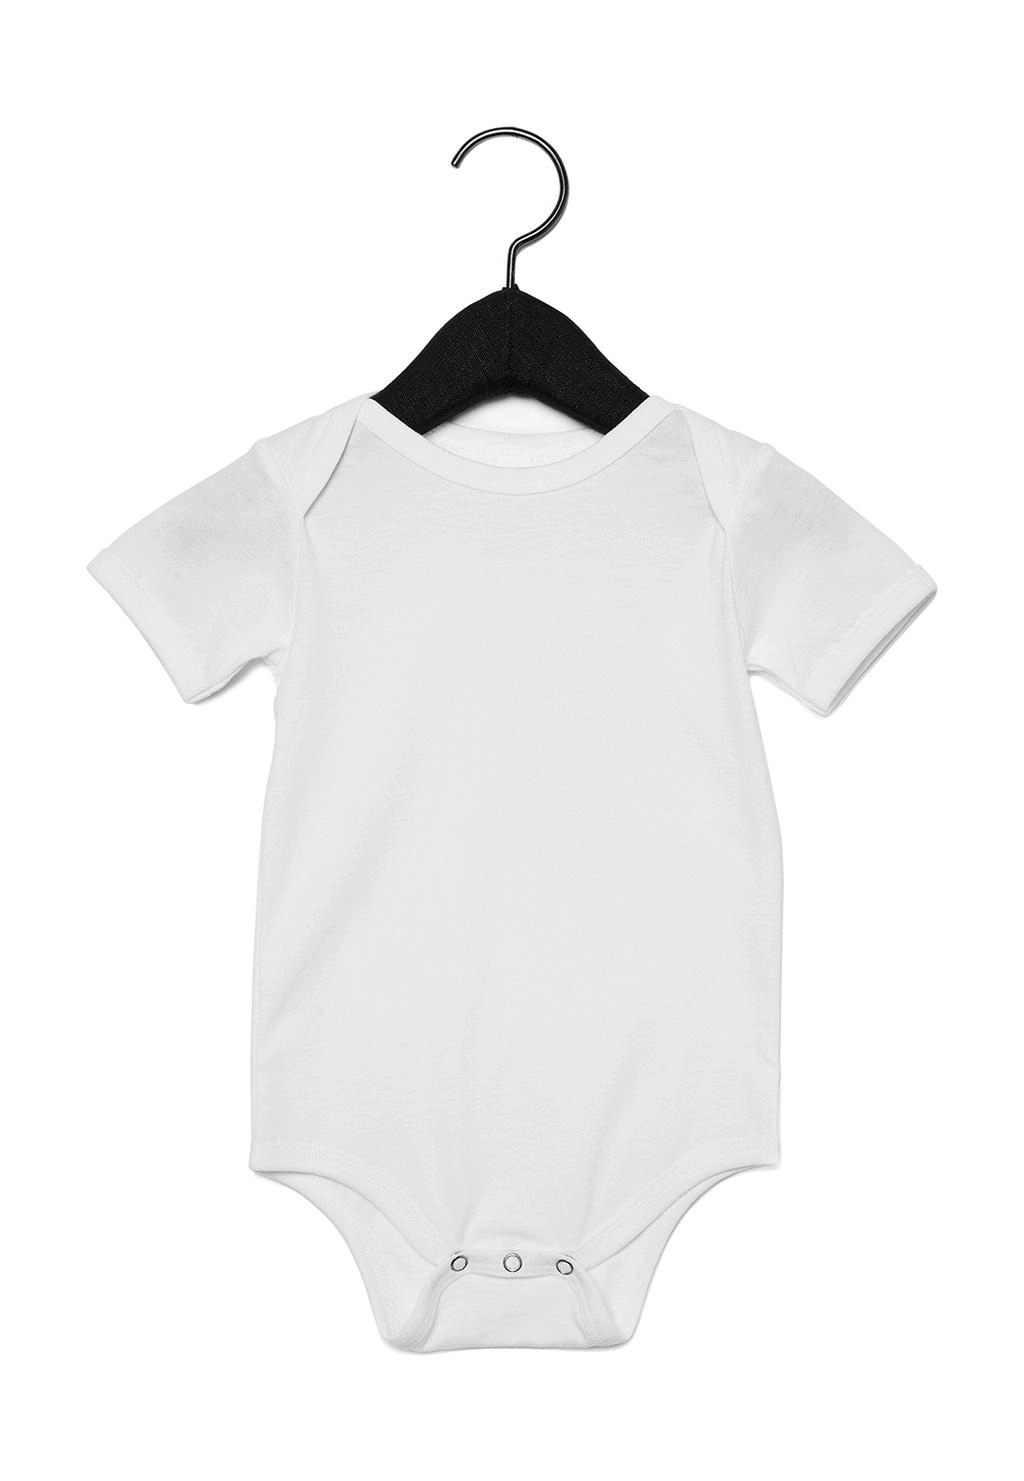 Baby Jersey Short Sleeve One Piece zum Besticken und Bedrucken in der Farbe White mit Ihren Logo, Schriftzug oder Motiv.